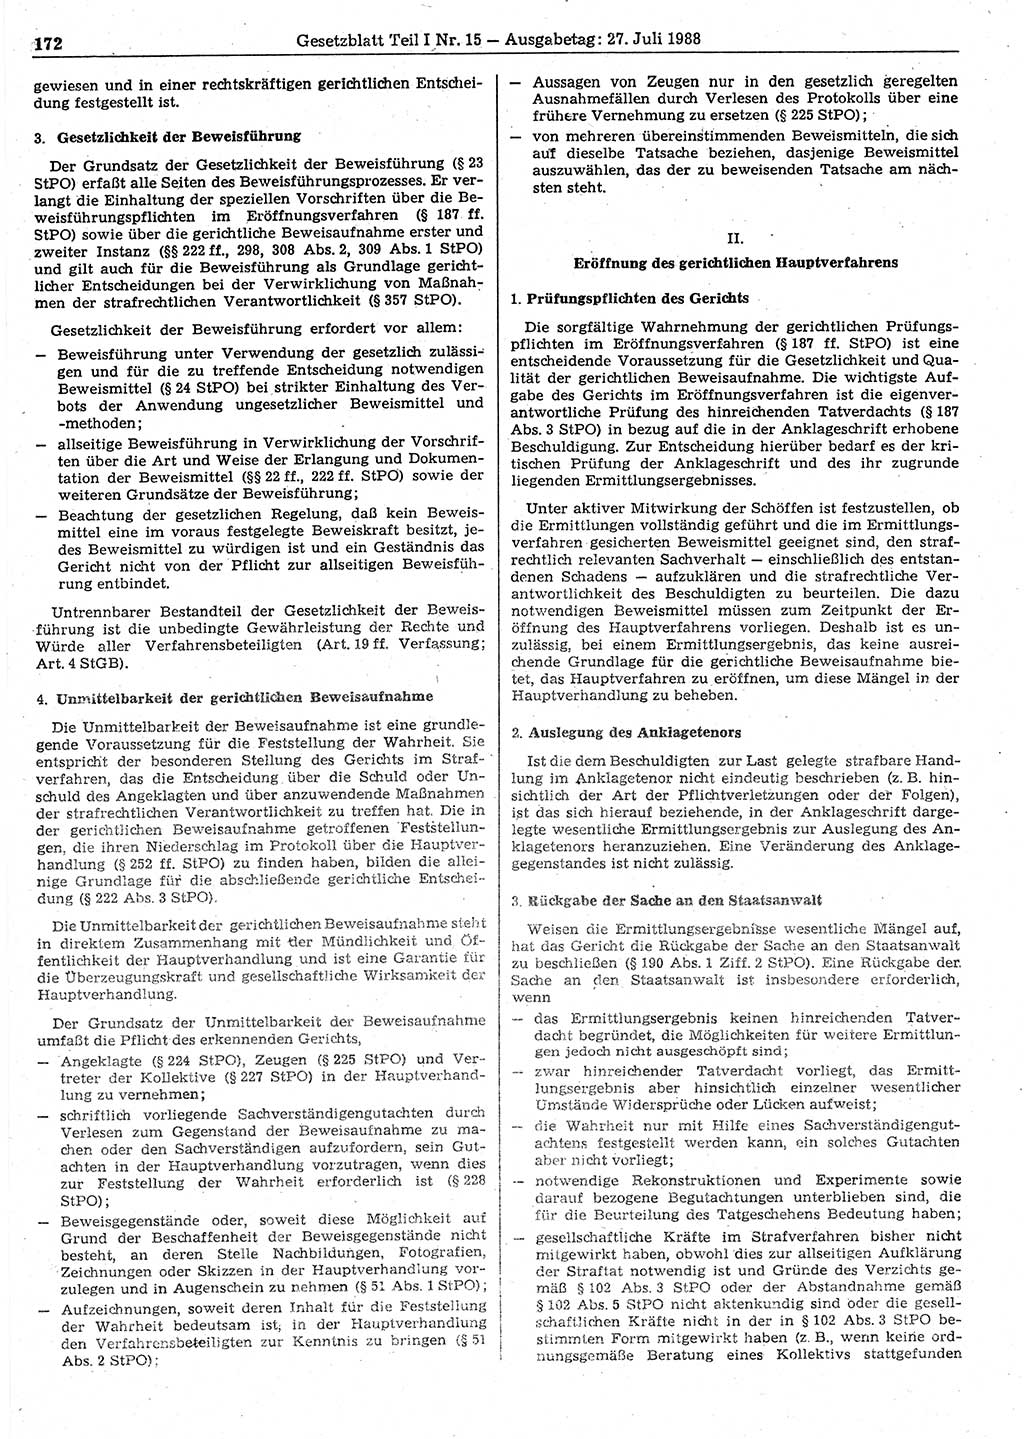 Gesetzblatt (GBl.) der Deutschen Demokratischen Republik (DDR) Teil Ⅰ 1988, Seite 172 (GBl. DDR Ⅰ 1988, S. 172)